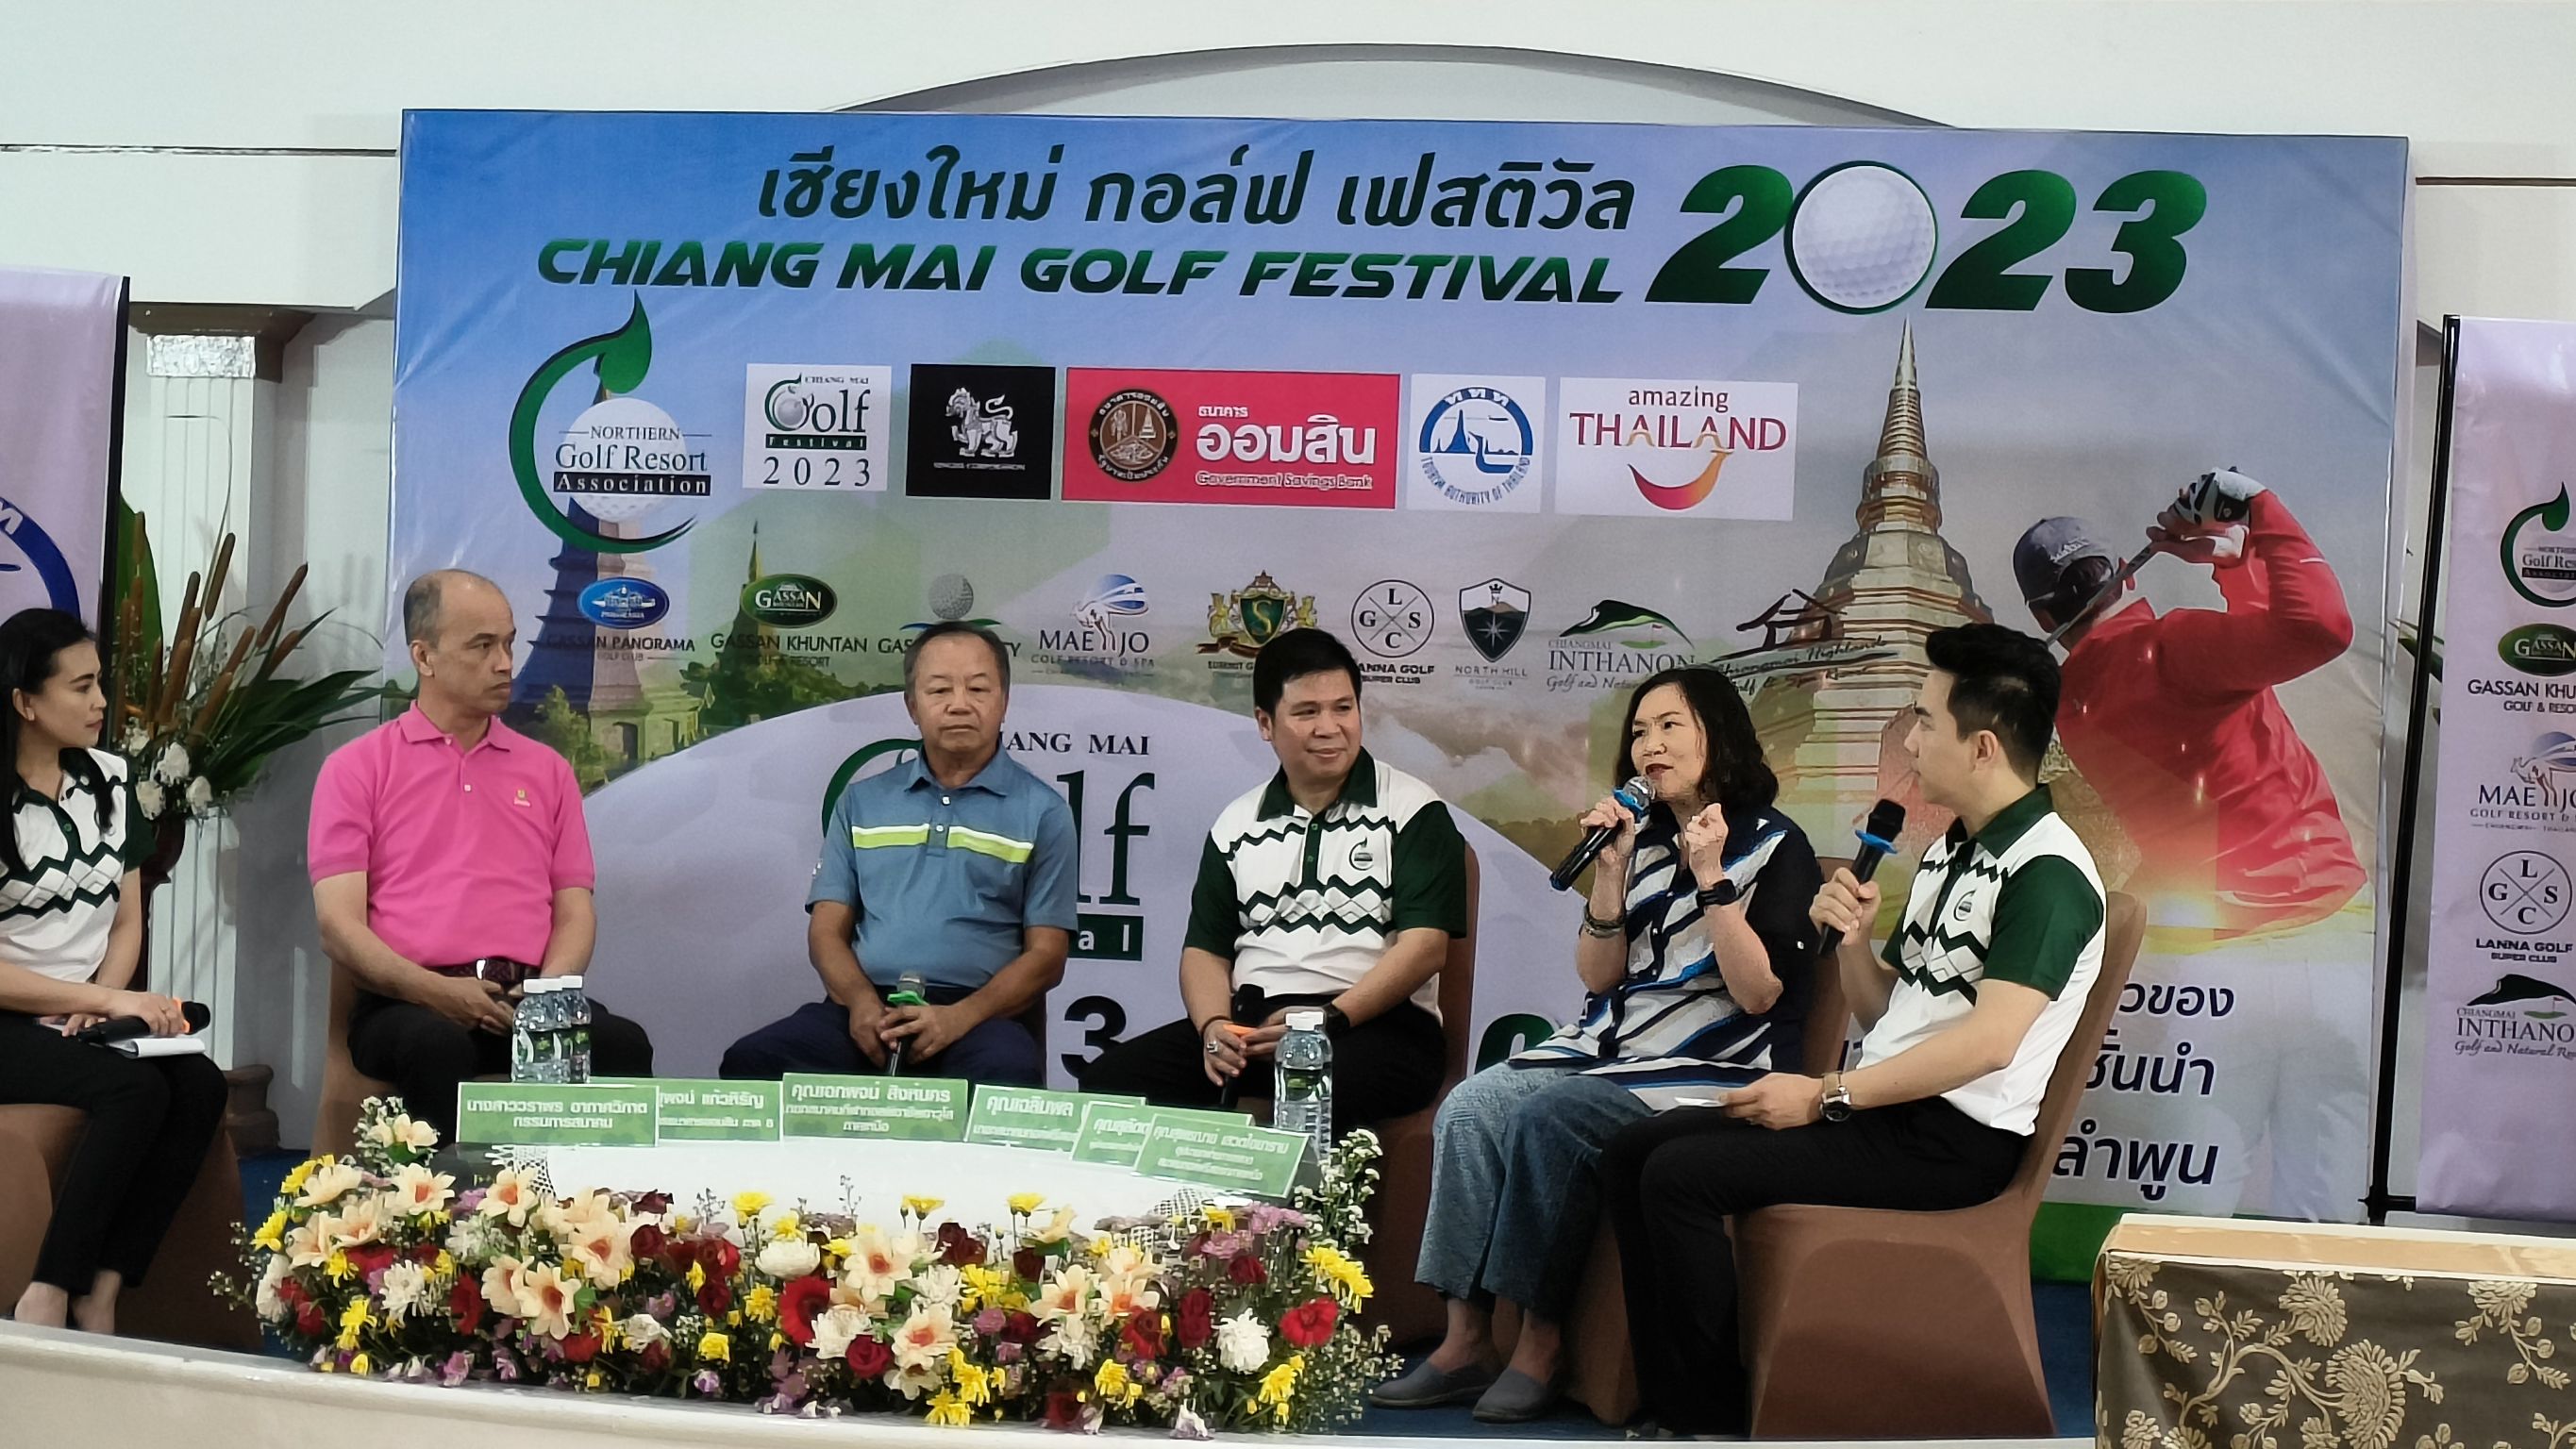 ททท.จับมือสมาคมกอล์ฟรีสอร์ทภาคเหนือเปิดฤดูกาลแข่งกอล์ฟเฟสติวัล Chiangmai Golf Festival 2023 ยาว 4 เดือนหวังกระตุ้นเศรษฐกิจ ไม่รอบรรยากาศหนุนจากการเมือง คาดรายได้สะพัดในระบบกว่า 122 ล.